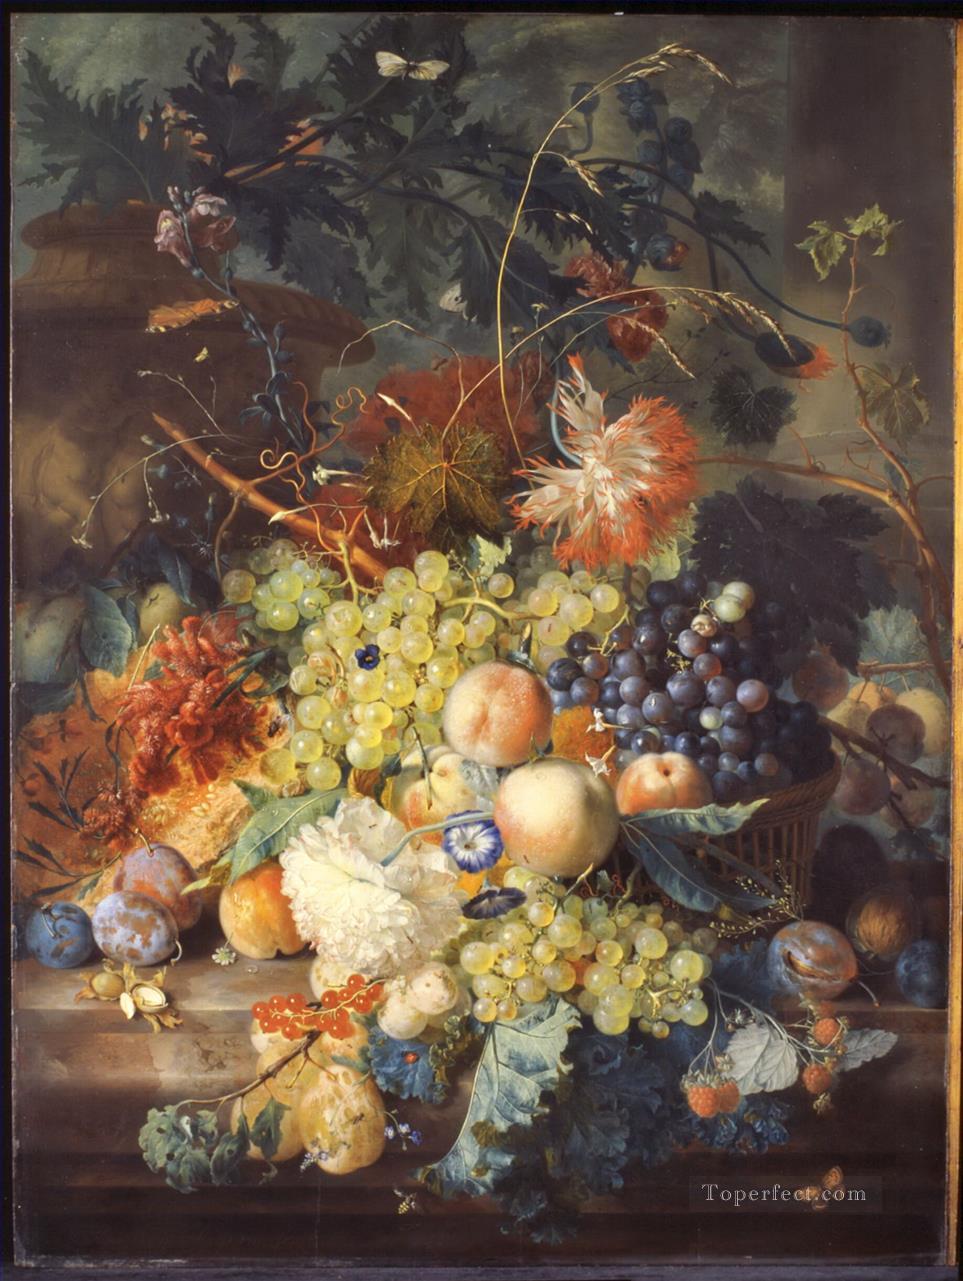 かごに山盛りになった果物の静物画 ヤン・ファン・ホイスム油絵